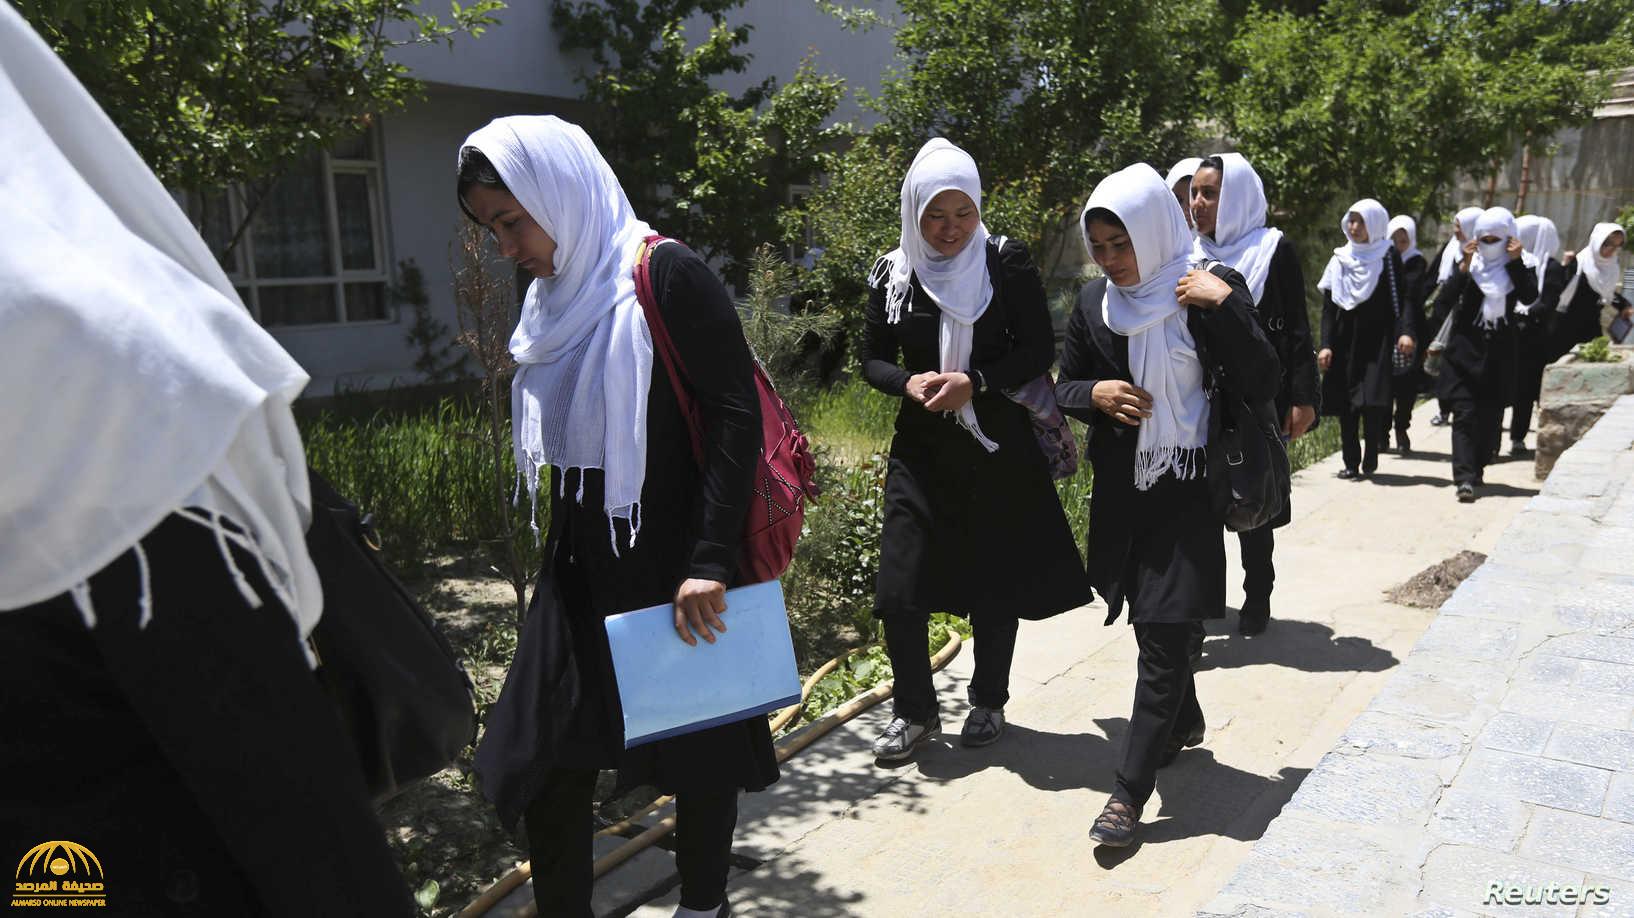 بعد عودة طالبان المتطرفة دينيا للحكم .. توقعات بمستقبل "بائس" ينتطر النساء في أفغانستان